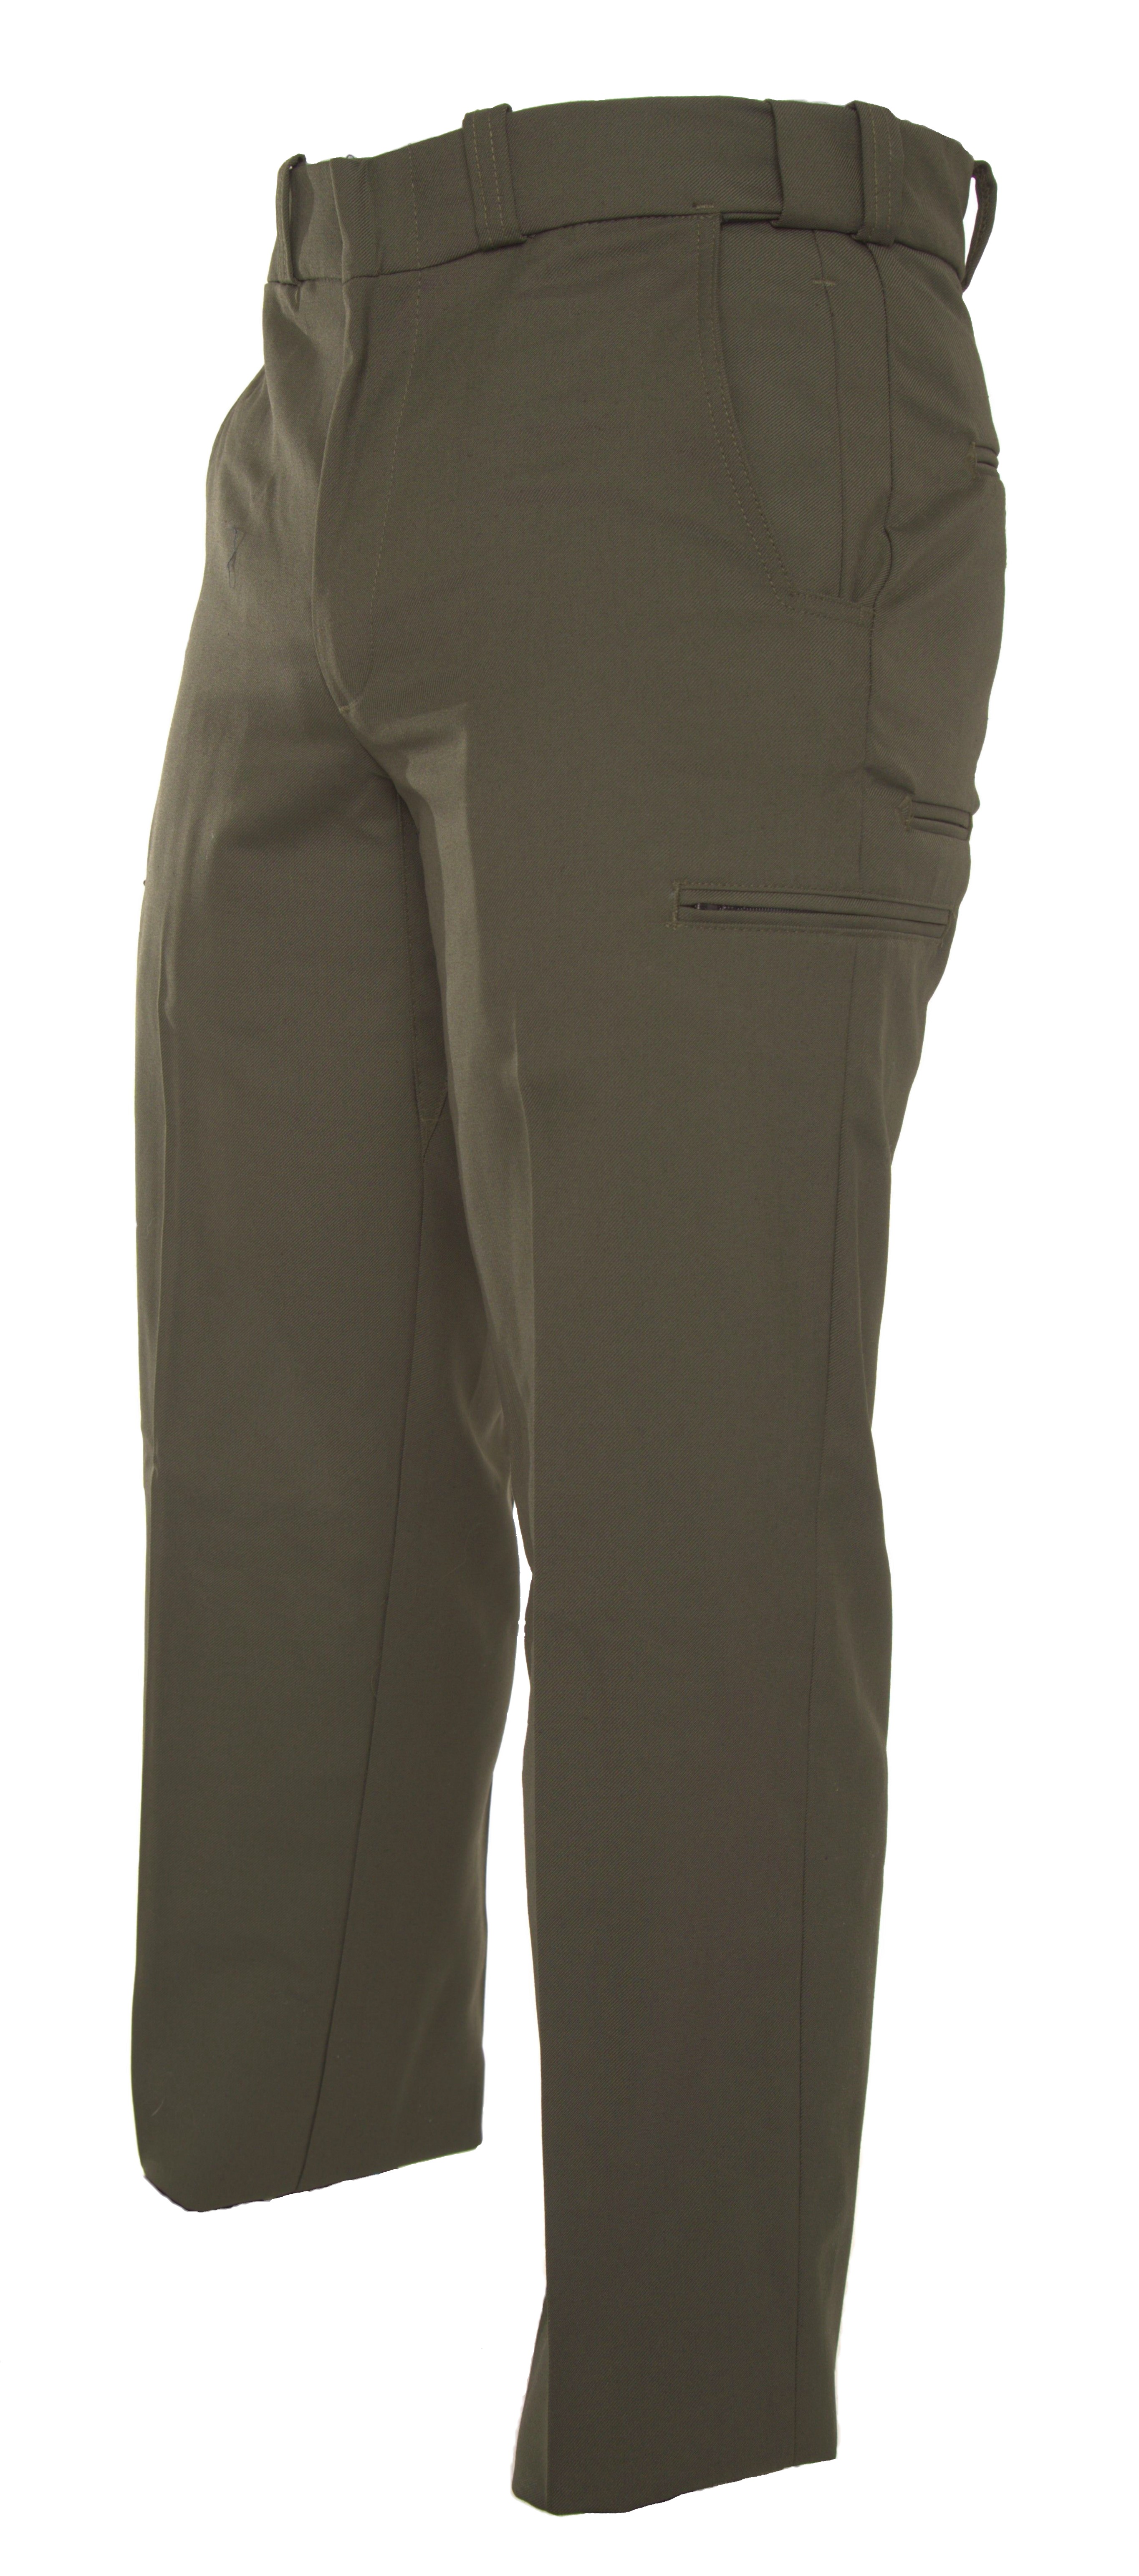 travel pants with hidden zipper pockets